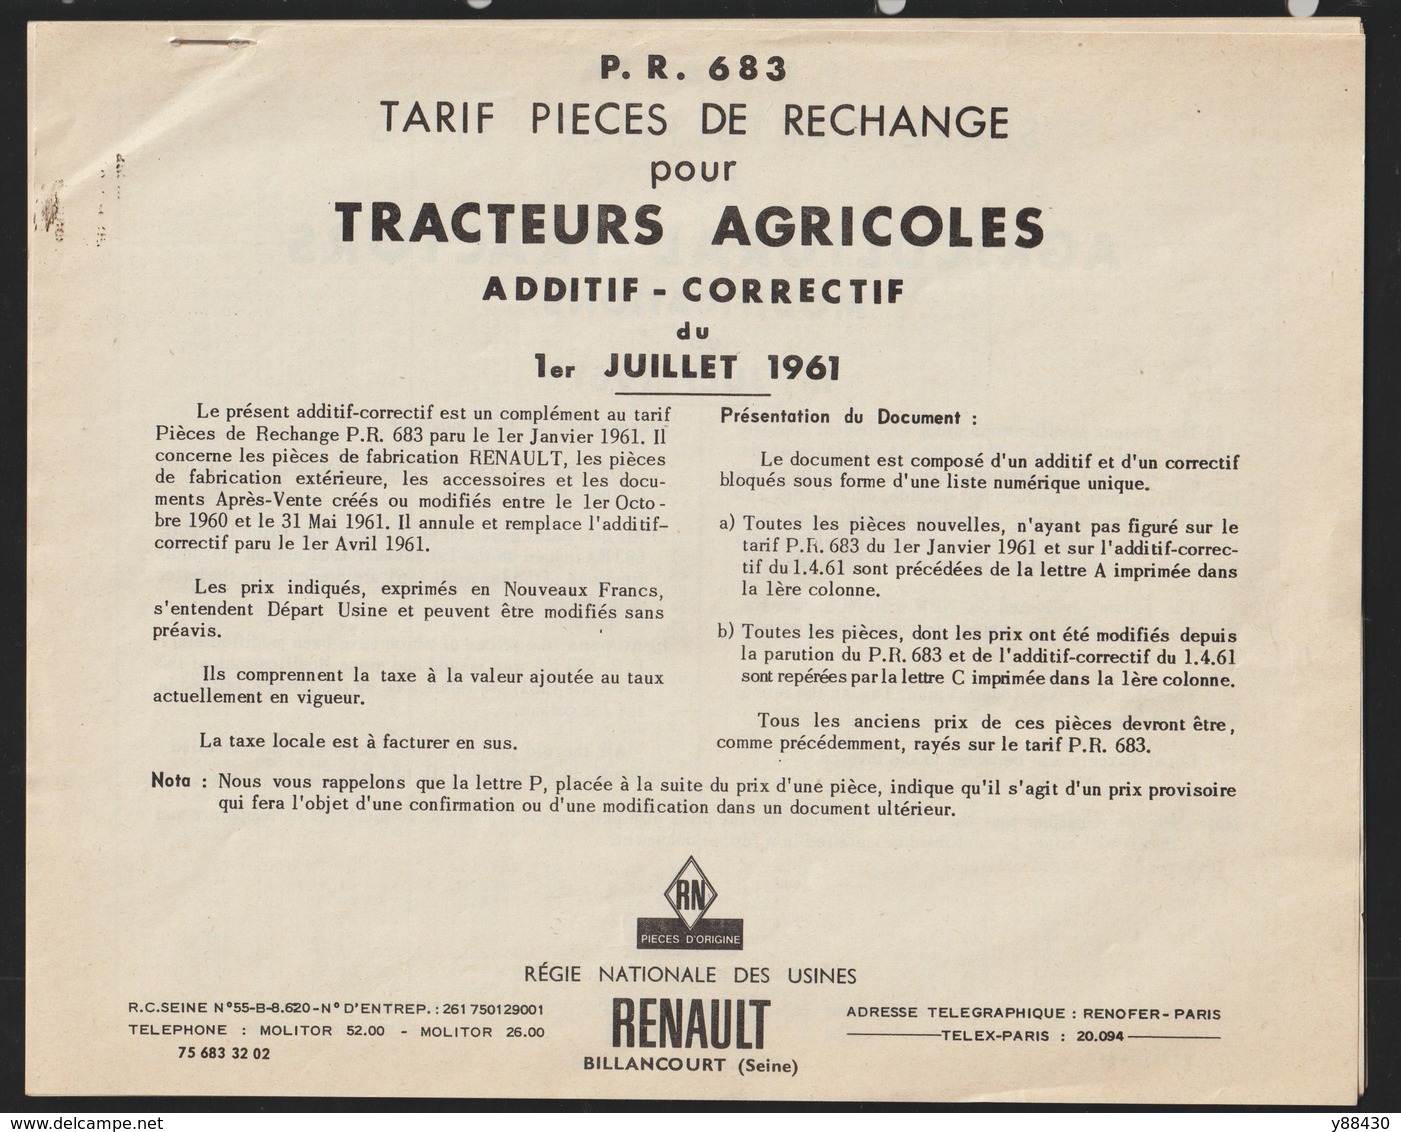 RENAULT - TRACTEURS AGRICOLES - Additif Correctif De Juillet 1961 - TARIF DES PIECES DE RECHANGE - 18 Pages - 5 Photos - Machines